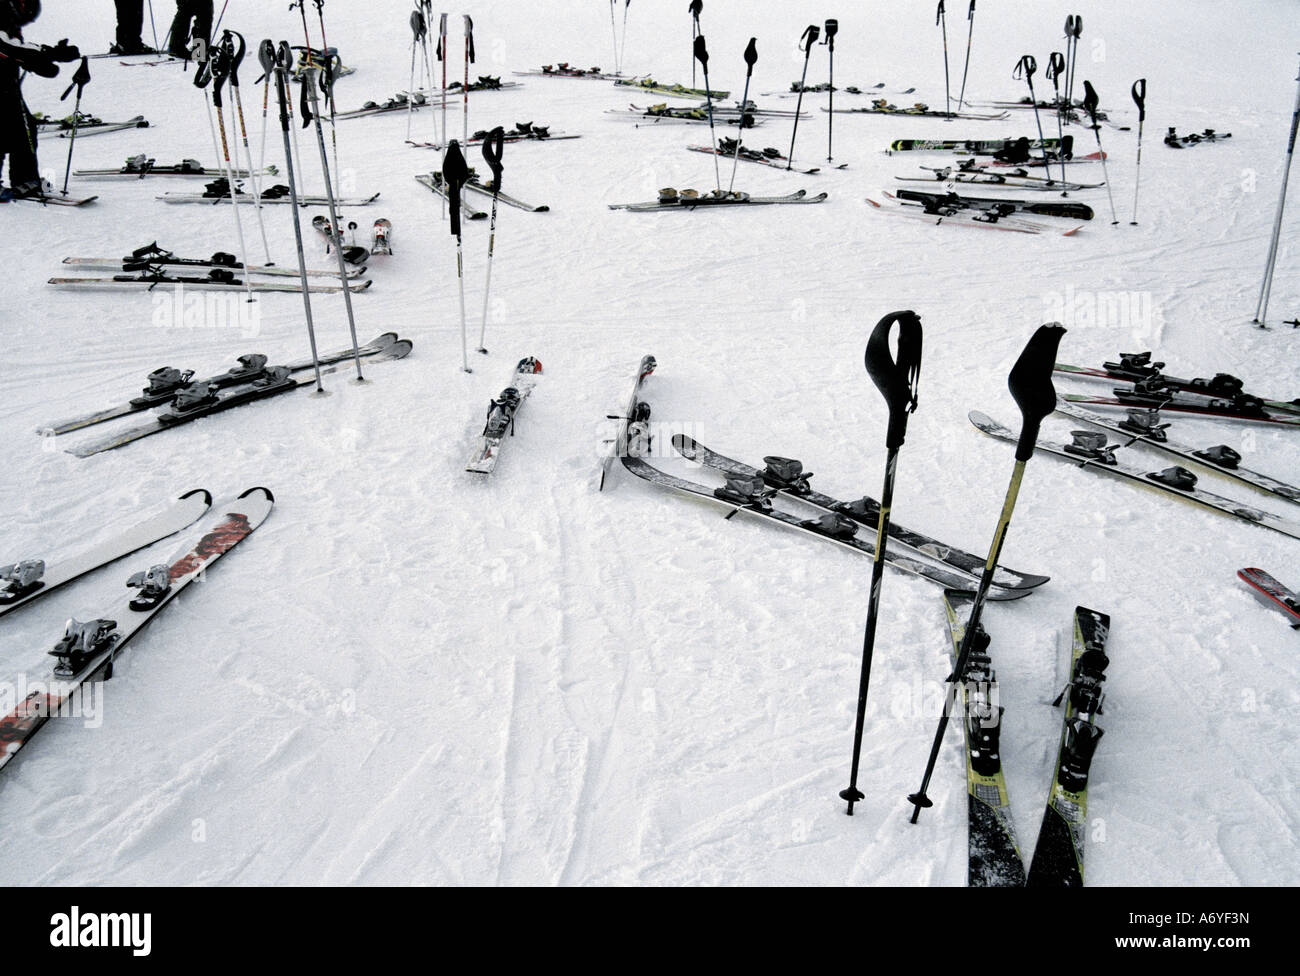 Attrezzatura da sci su piste in corrispondenza di una stazione sciistica Foto Stock